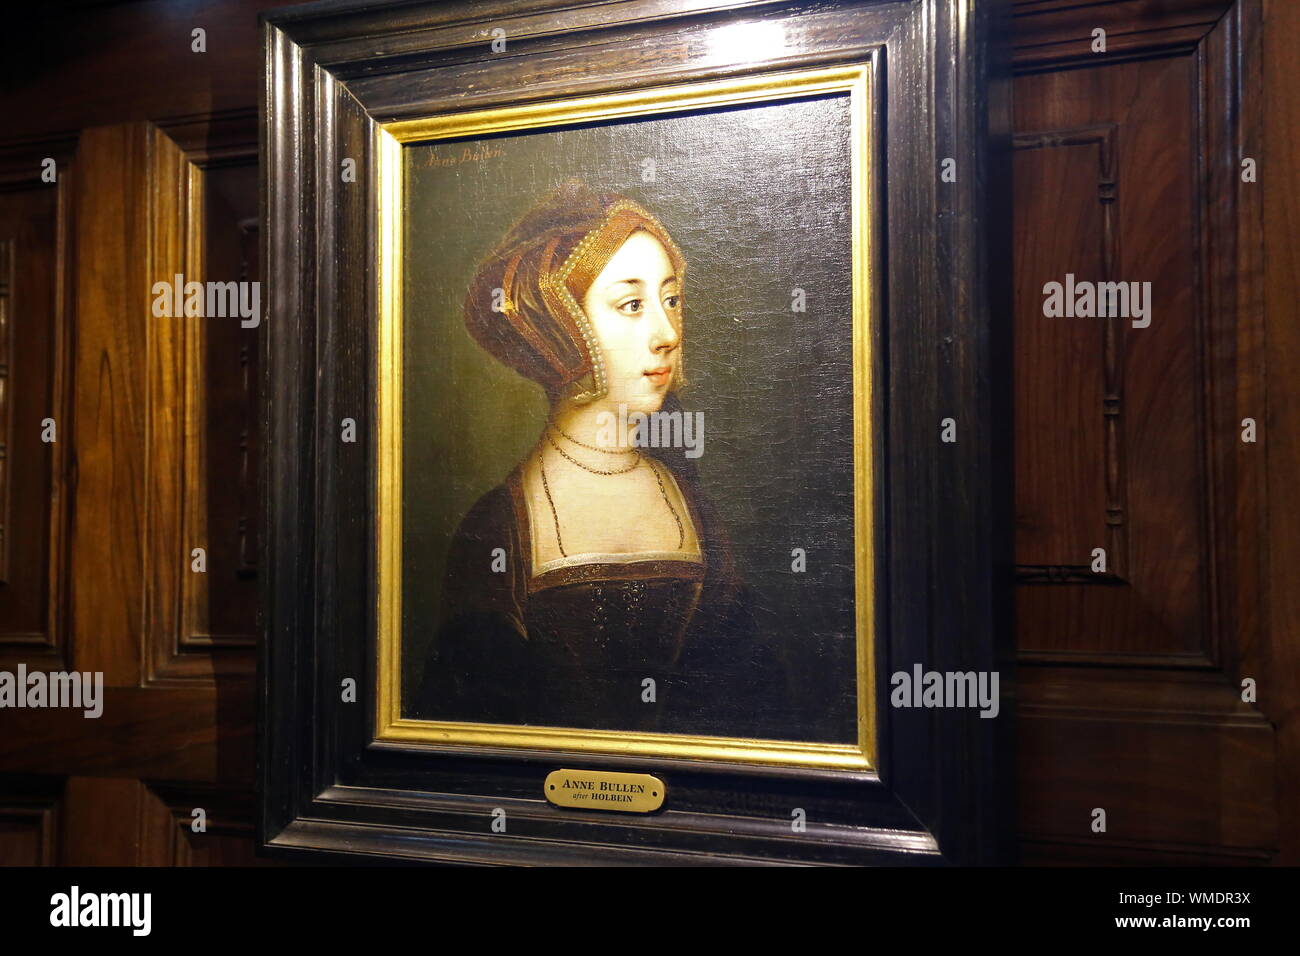 Portrait d'Anne Boleyn, salle intérieure, le château de Hever, Hever, Edenbridge, Kent, Angleterre, Grande-Bretagne, Royaume-Uni, UK, Europe Banque D'Images